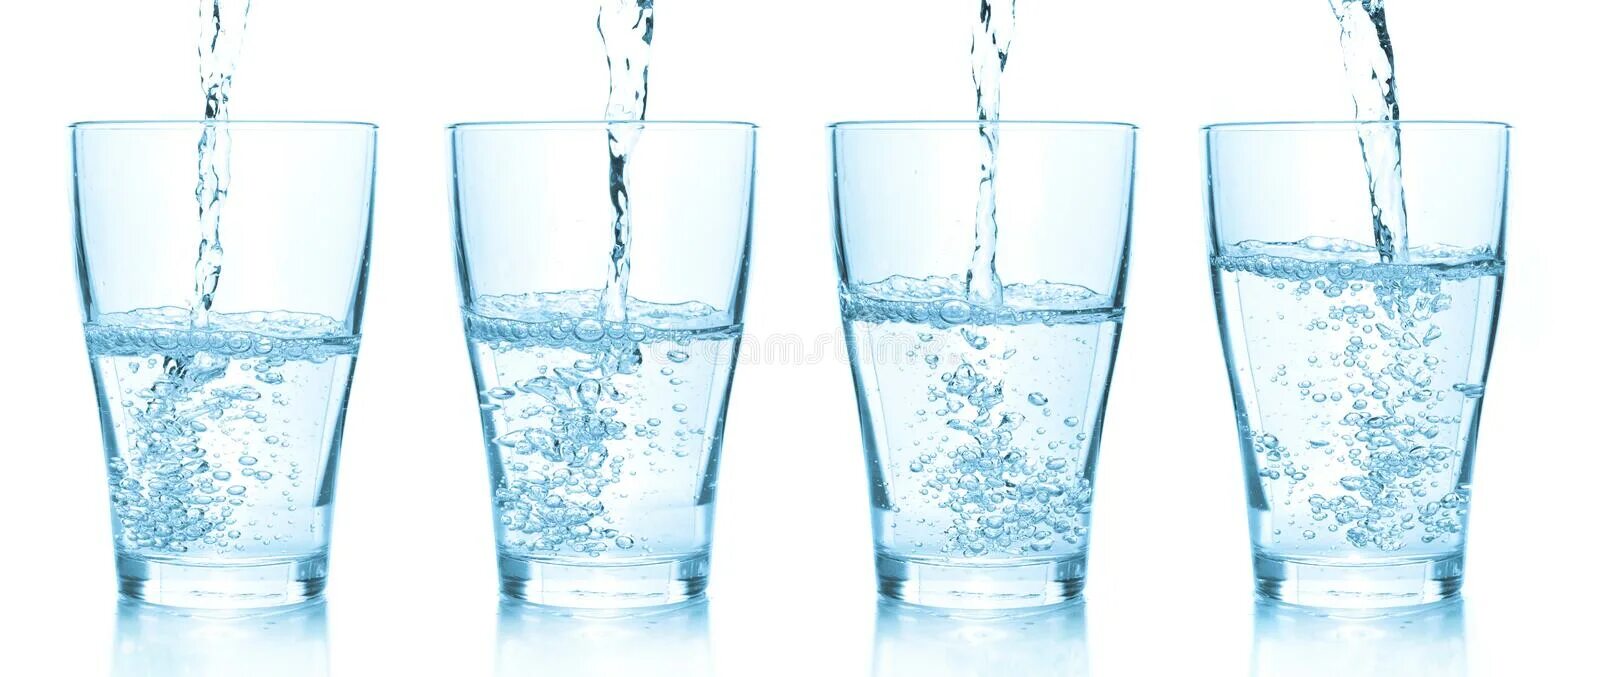 Четыре стакана воды. Четыре стакана с водой. Стаканчики с водой разной высоты. Pouring Water into Glasses. 4 Стакана с коктейлем Газонаполненные.